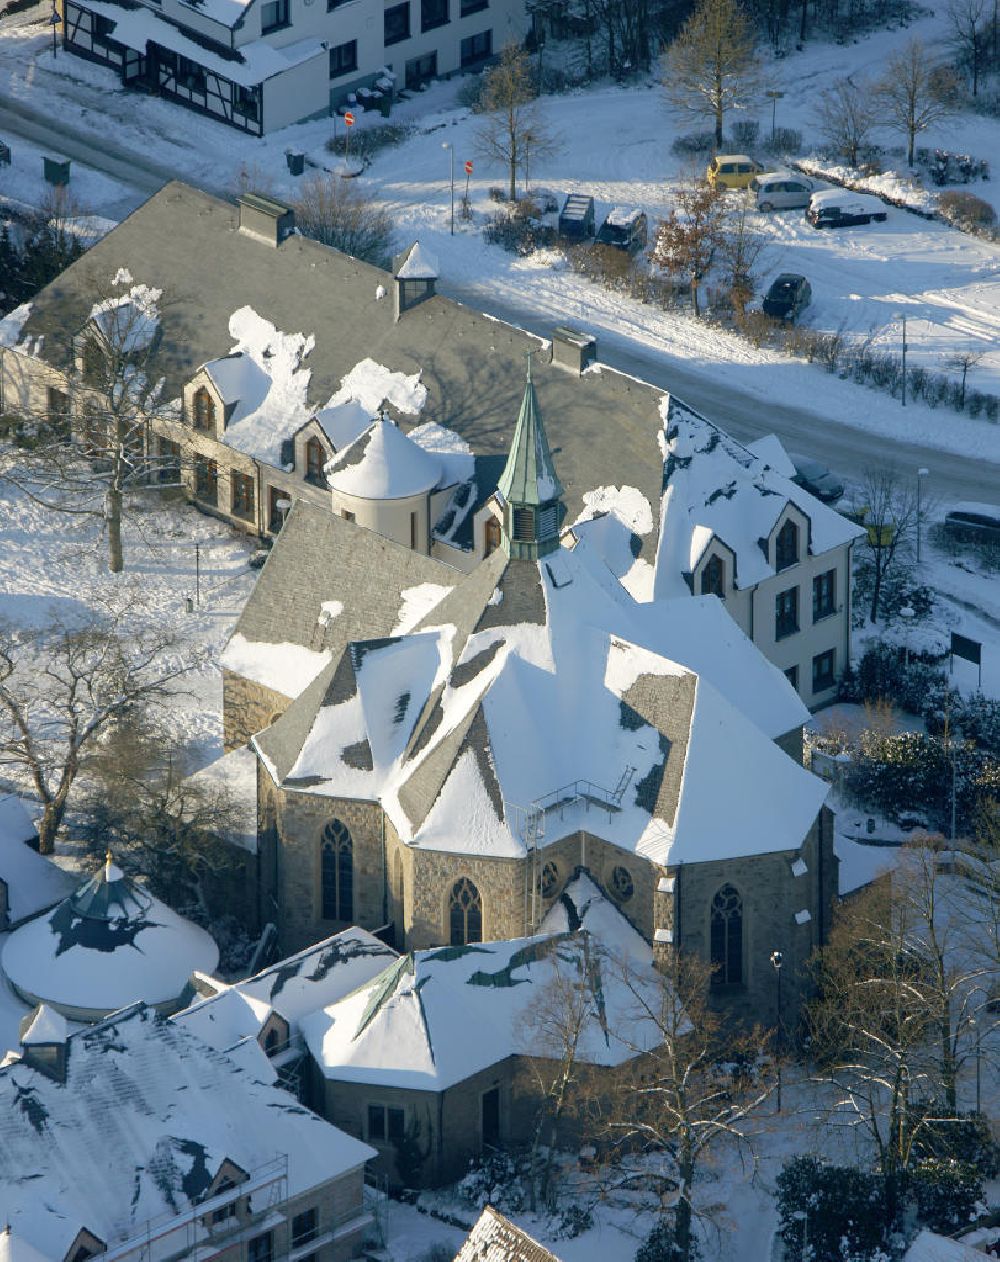 Luftbild Bochum - Winterlich verschneites Kloster Stiepel in Bochum, Nordrhein-Westfalen